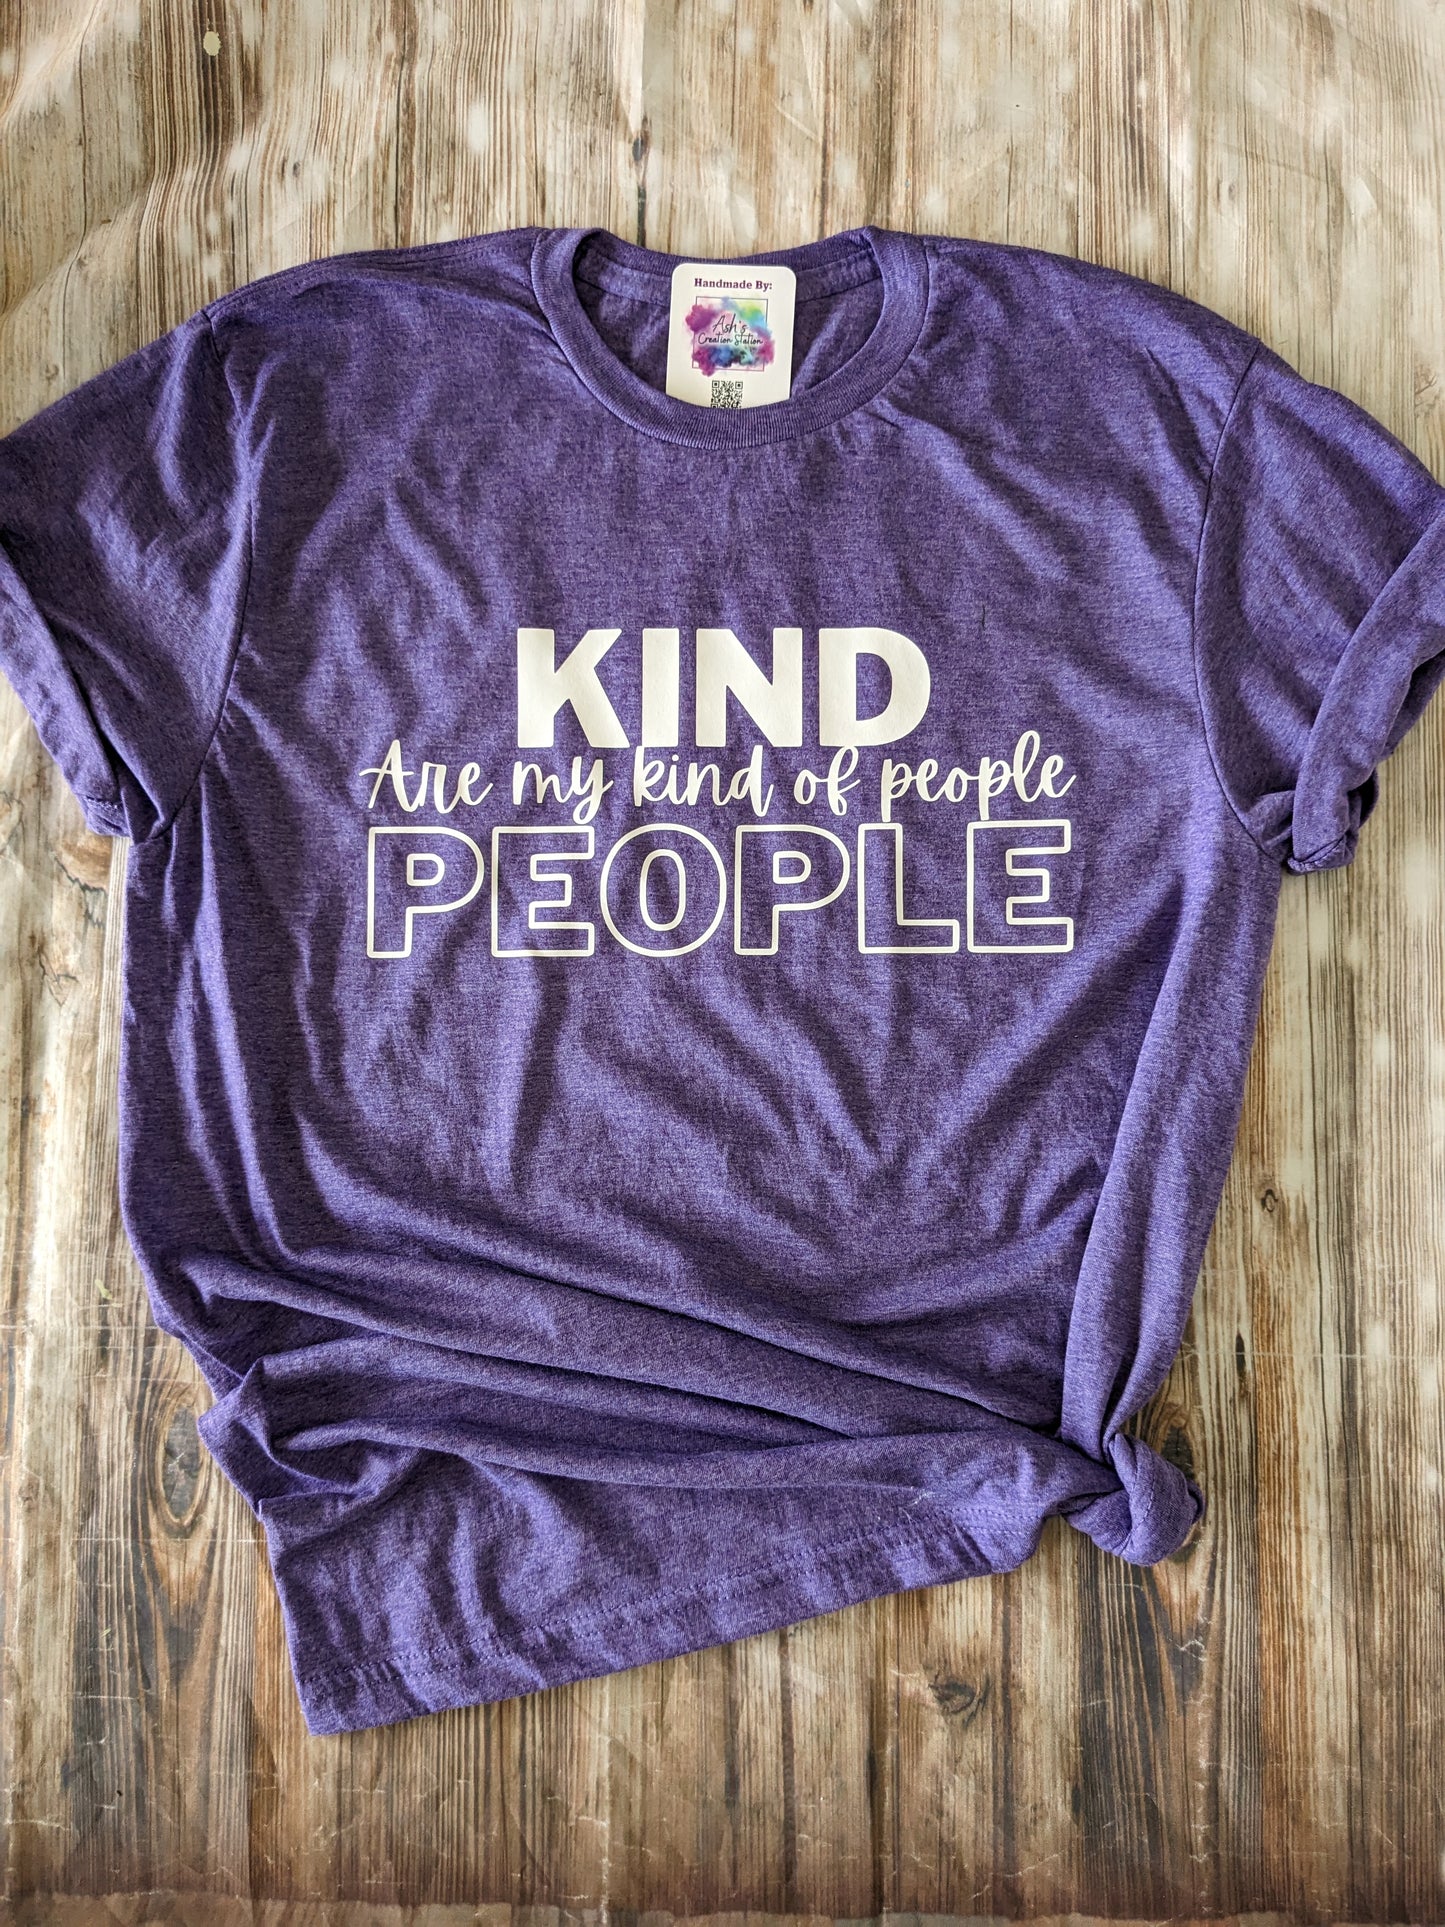 Kind People - Tshirt